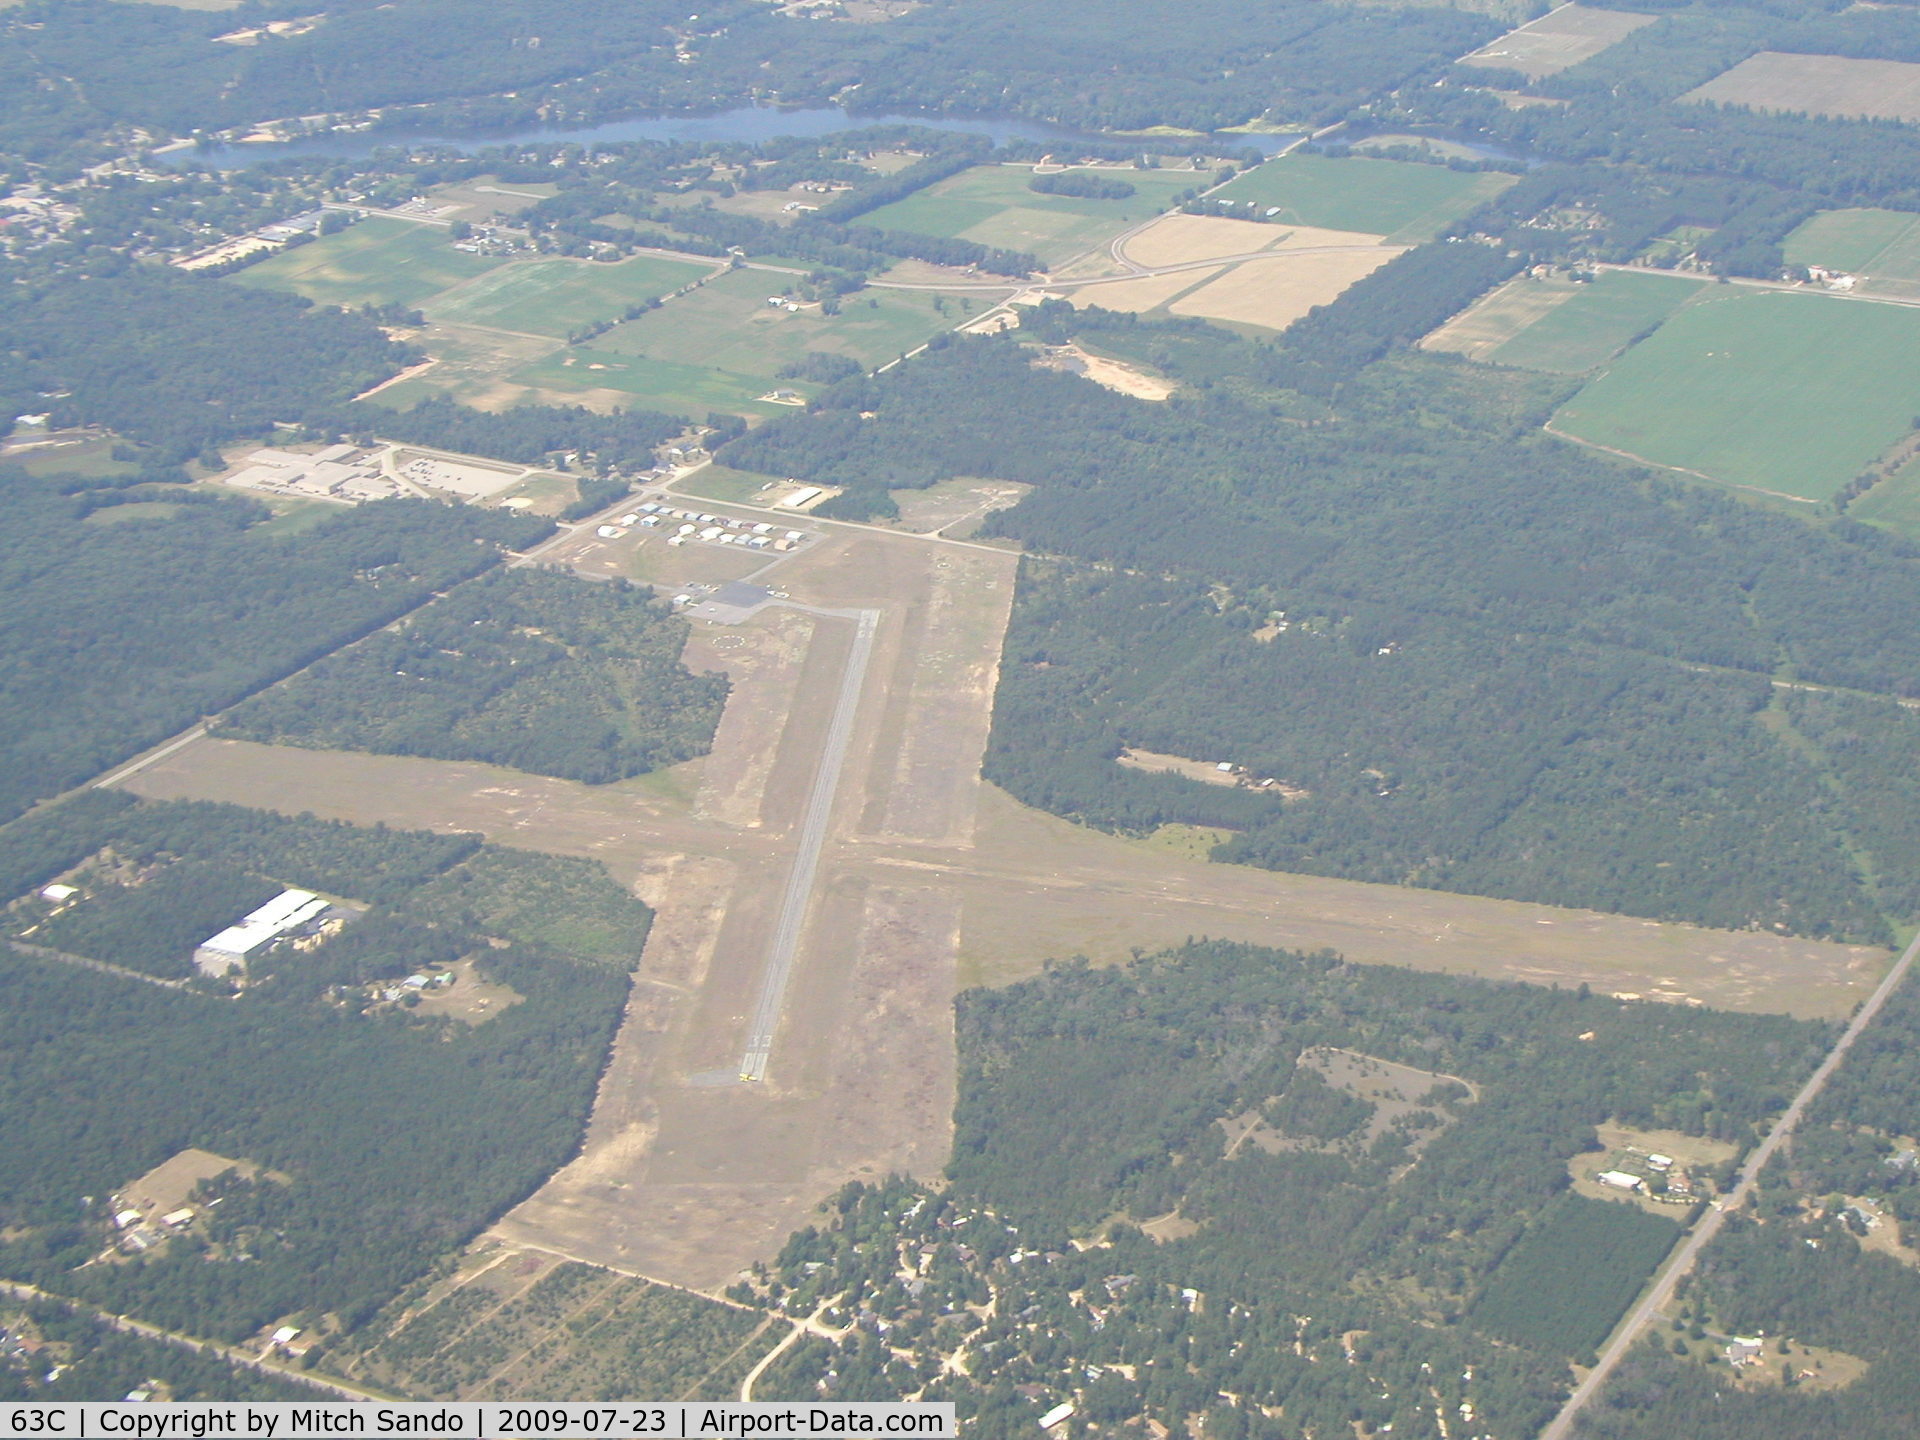 Adams County Legion Field Airport (63C) - Adams County Airport (Legion Field) in Friendship, WI.